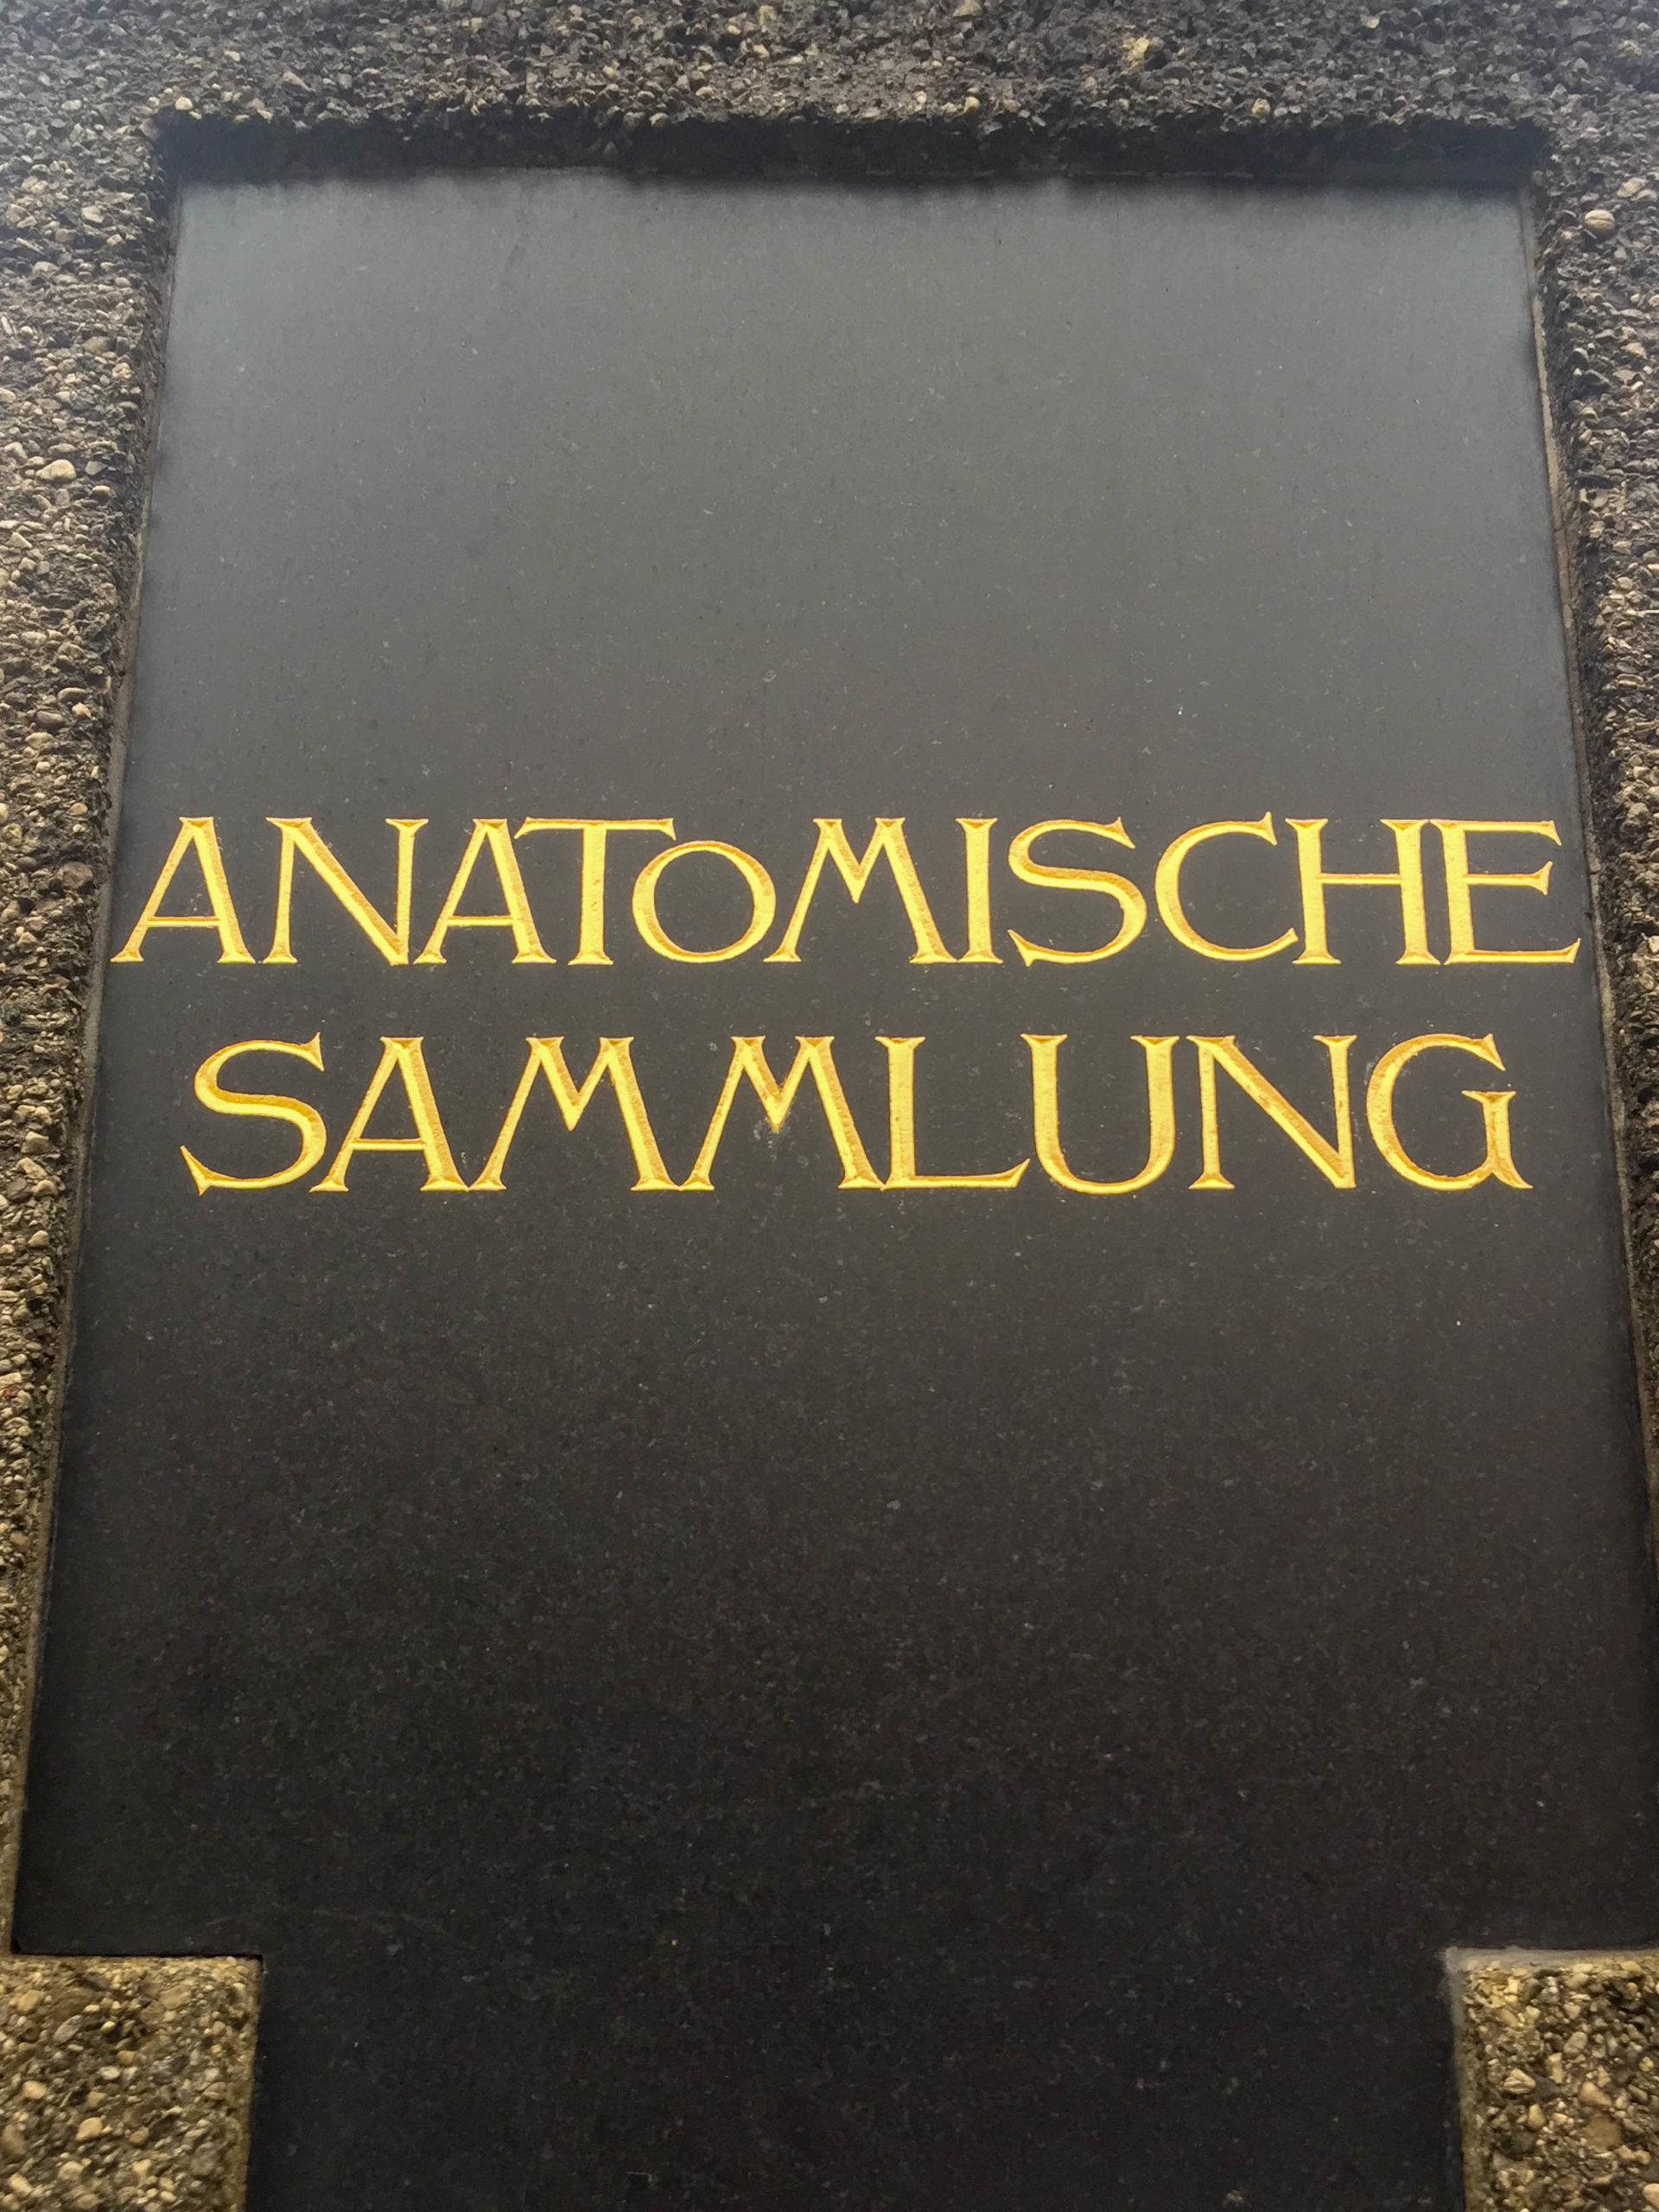 Anatomische Anstalt der Ludwig-Maximilians-Universität, 1905-1907. Architekt: Max Littmann